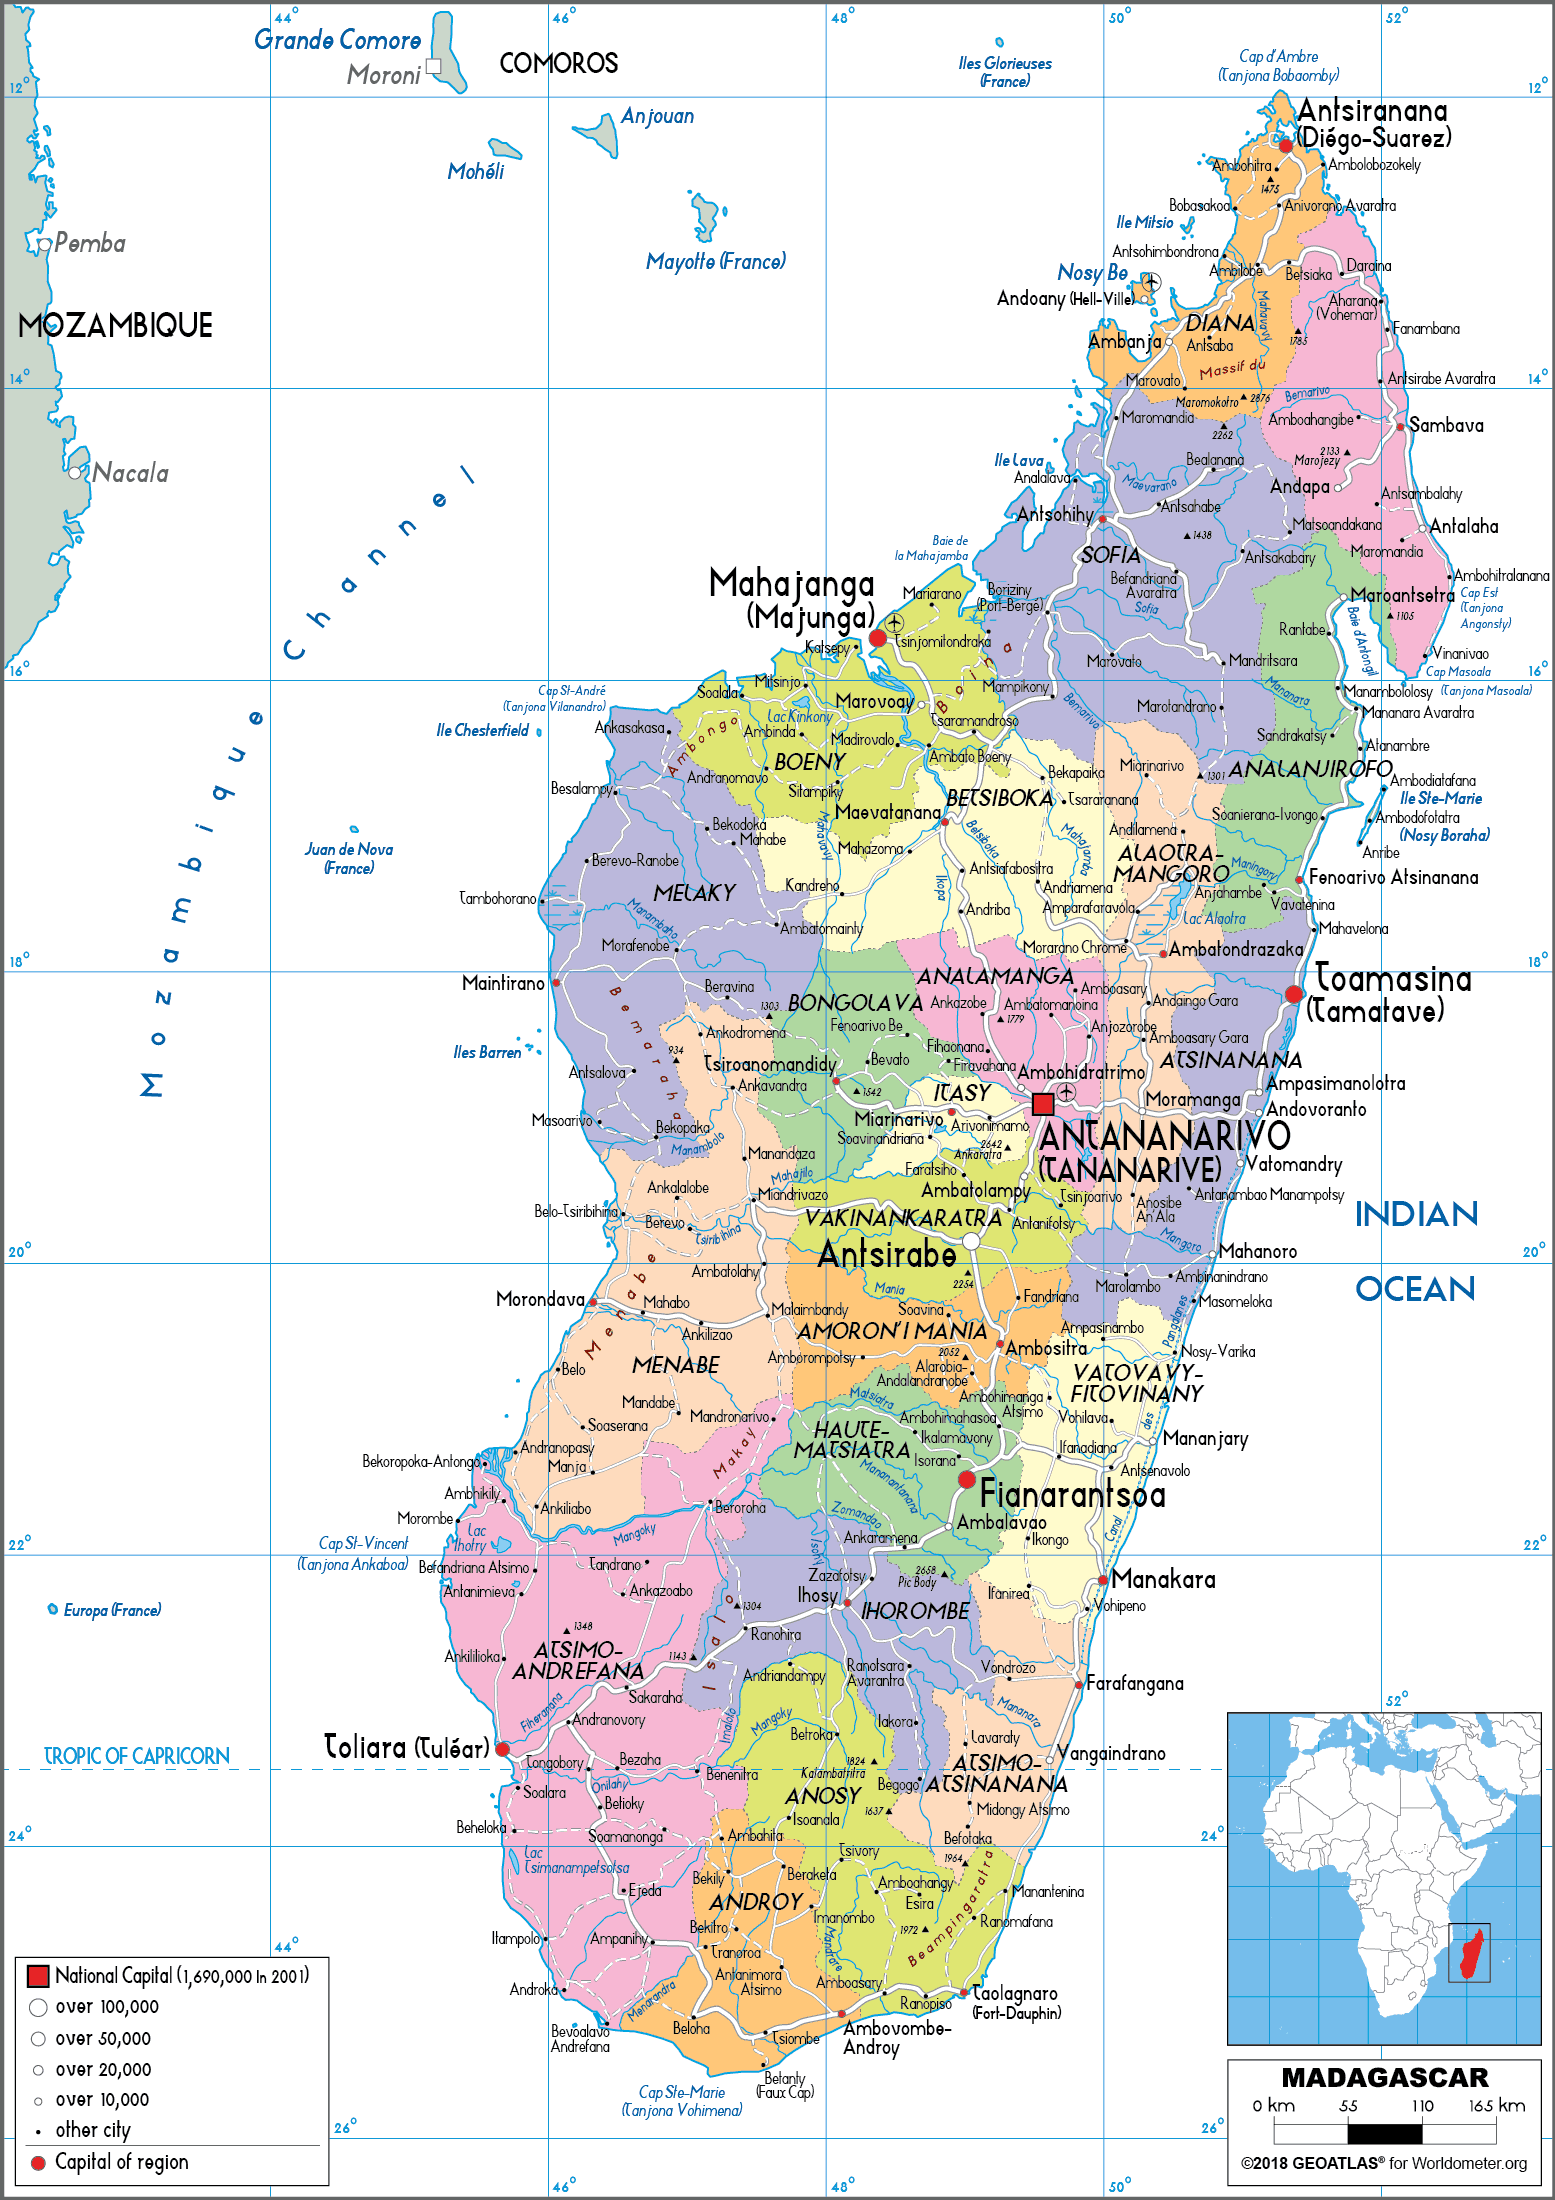 [Update] Bản đồ hành chính đất nước Madagascar (Madagascar Map) phóng to năm 2022 30